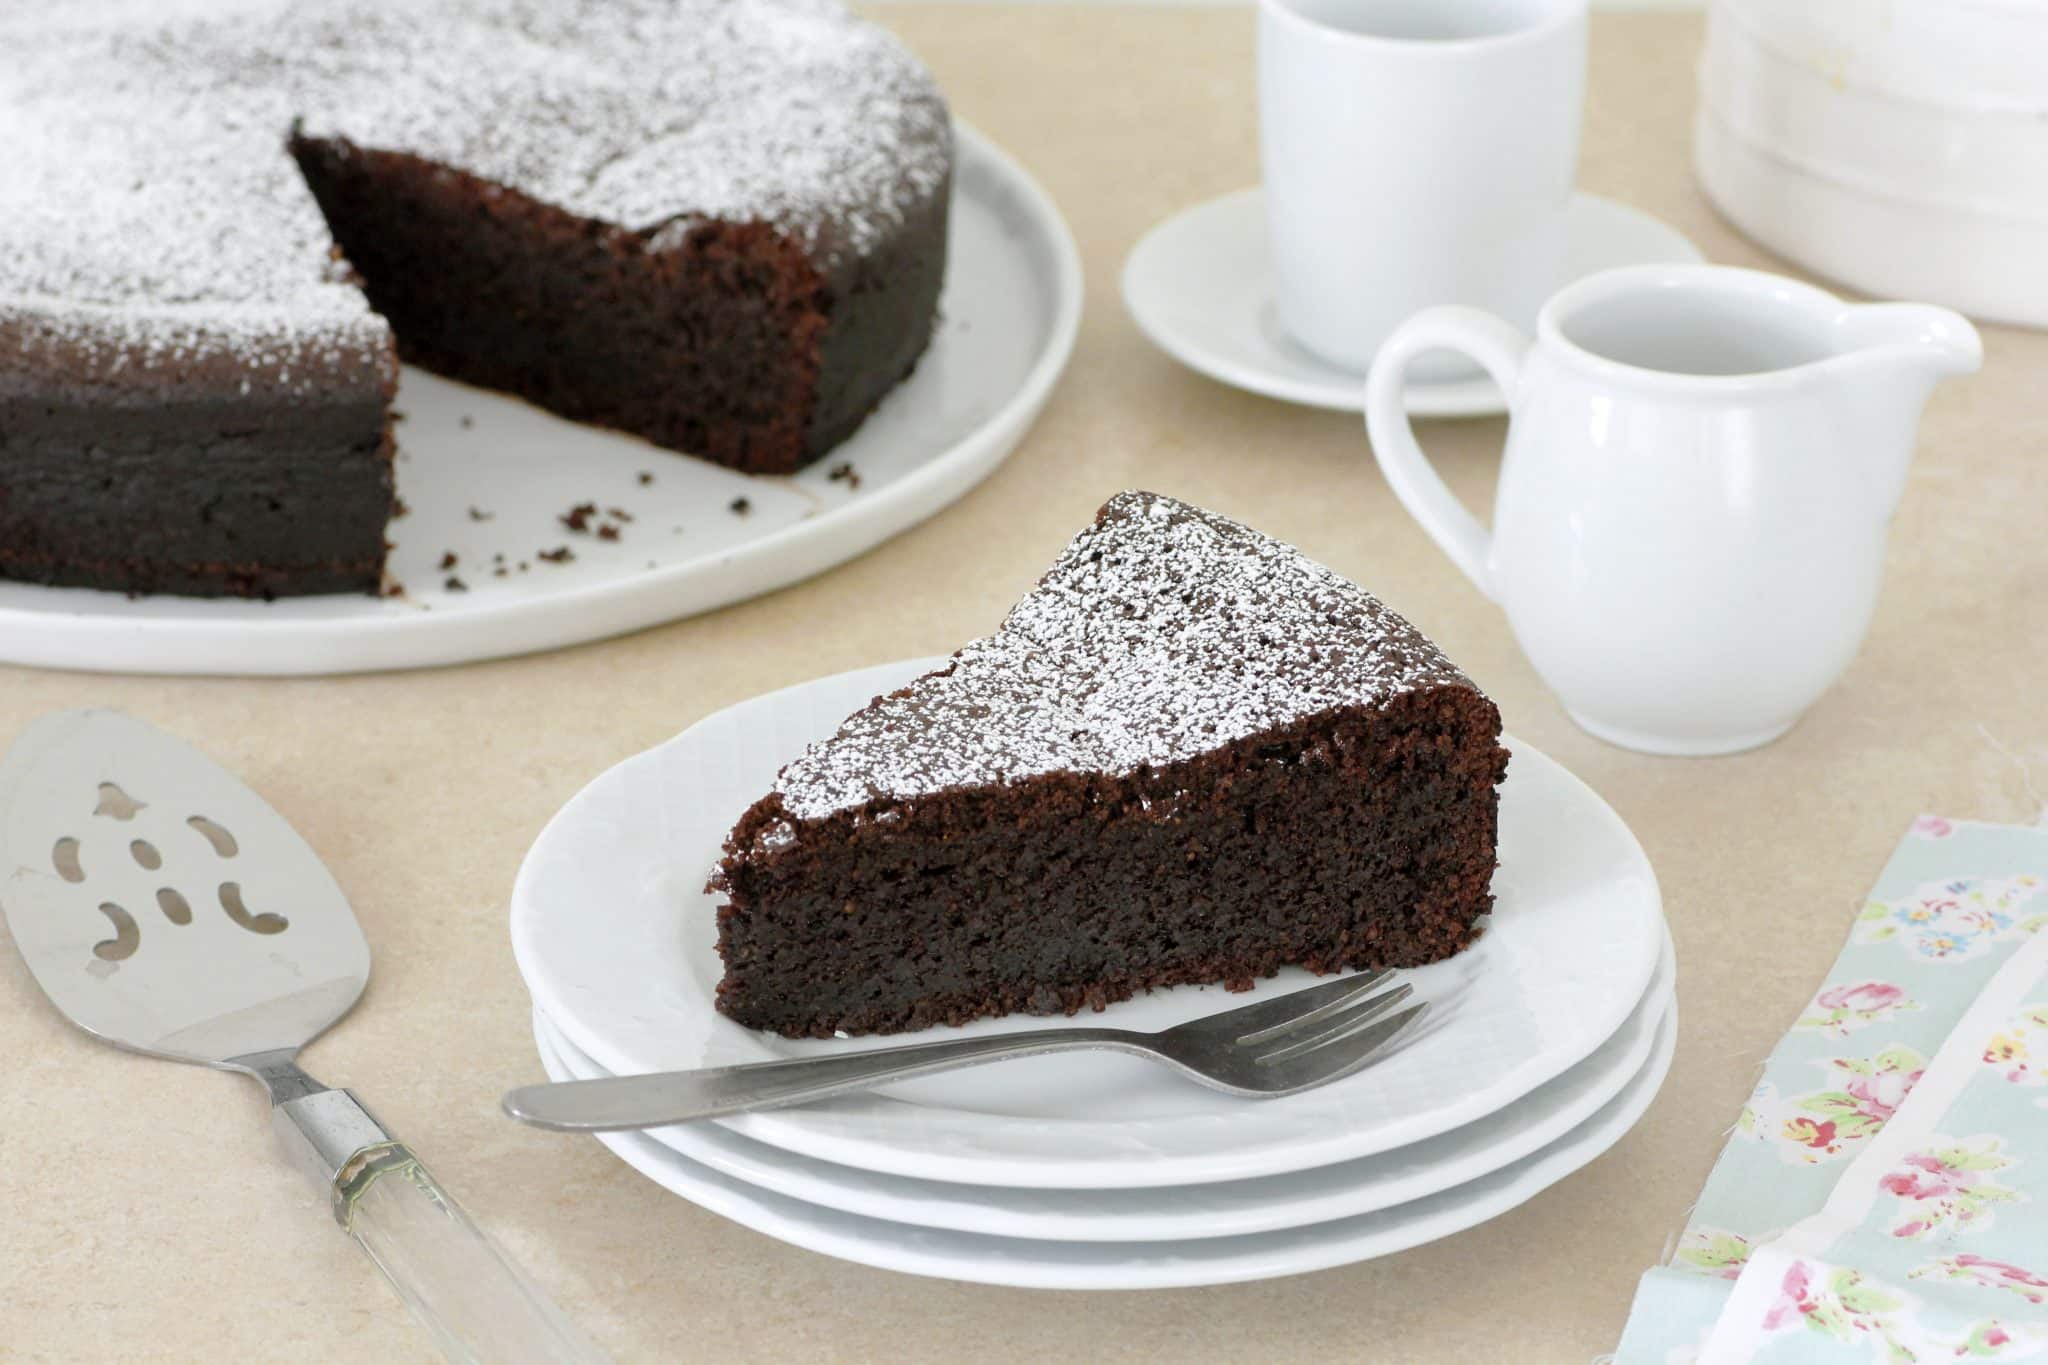 אם רוצים עוגה קצת יותר מתוקה אפשר להשתמש ב-100 גרם שוקולד מריר ו-100 גרם שוקולד חלב. צילום וסטיילינג נטלי לוין